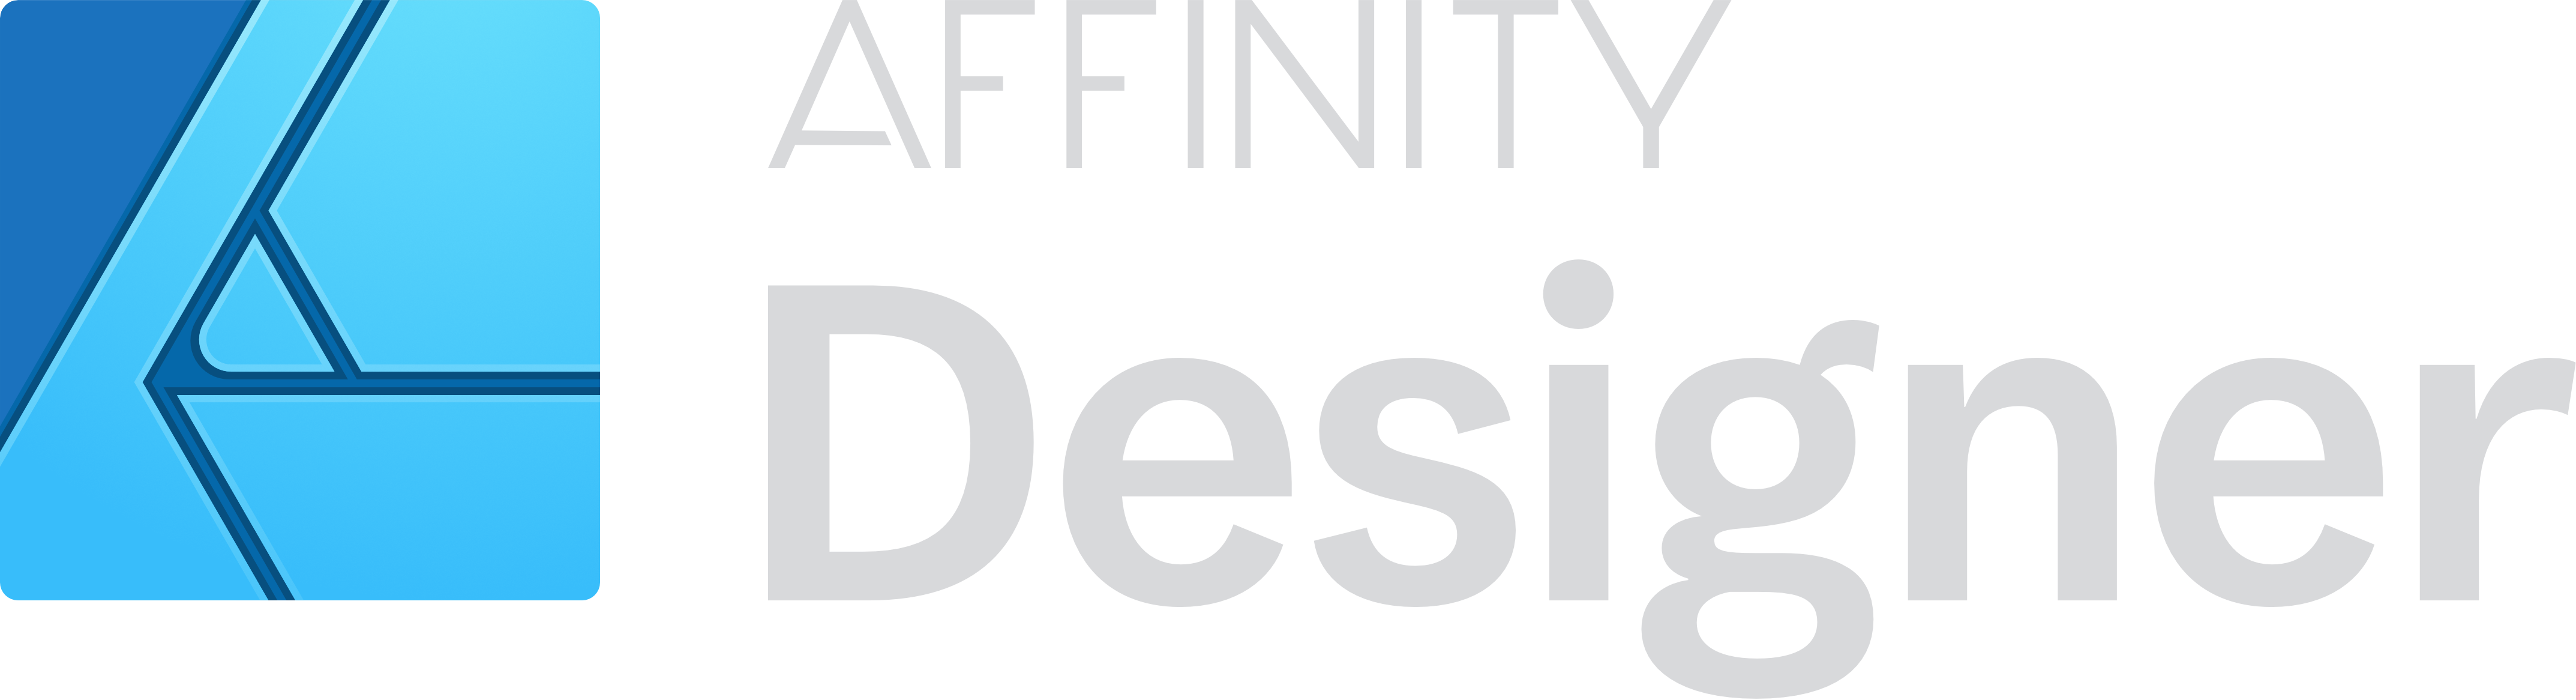 Affinity Designer logo  en Compolaser